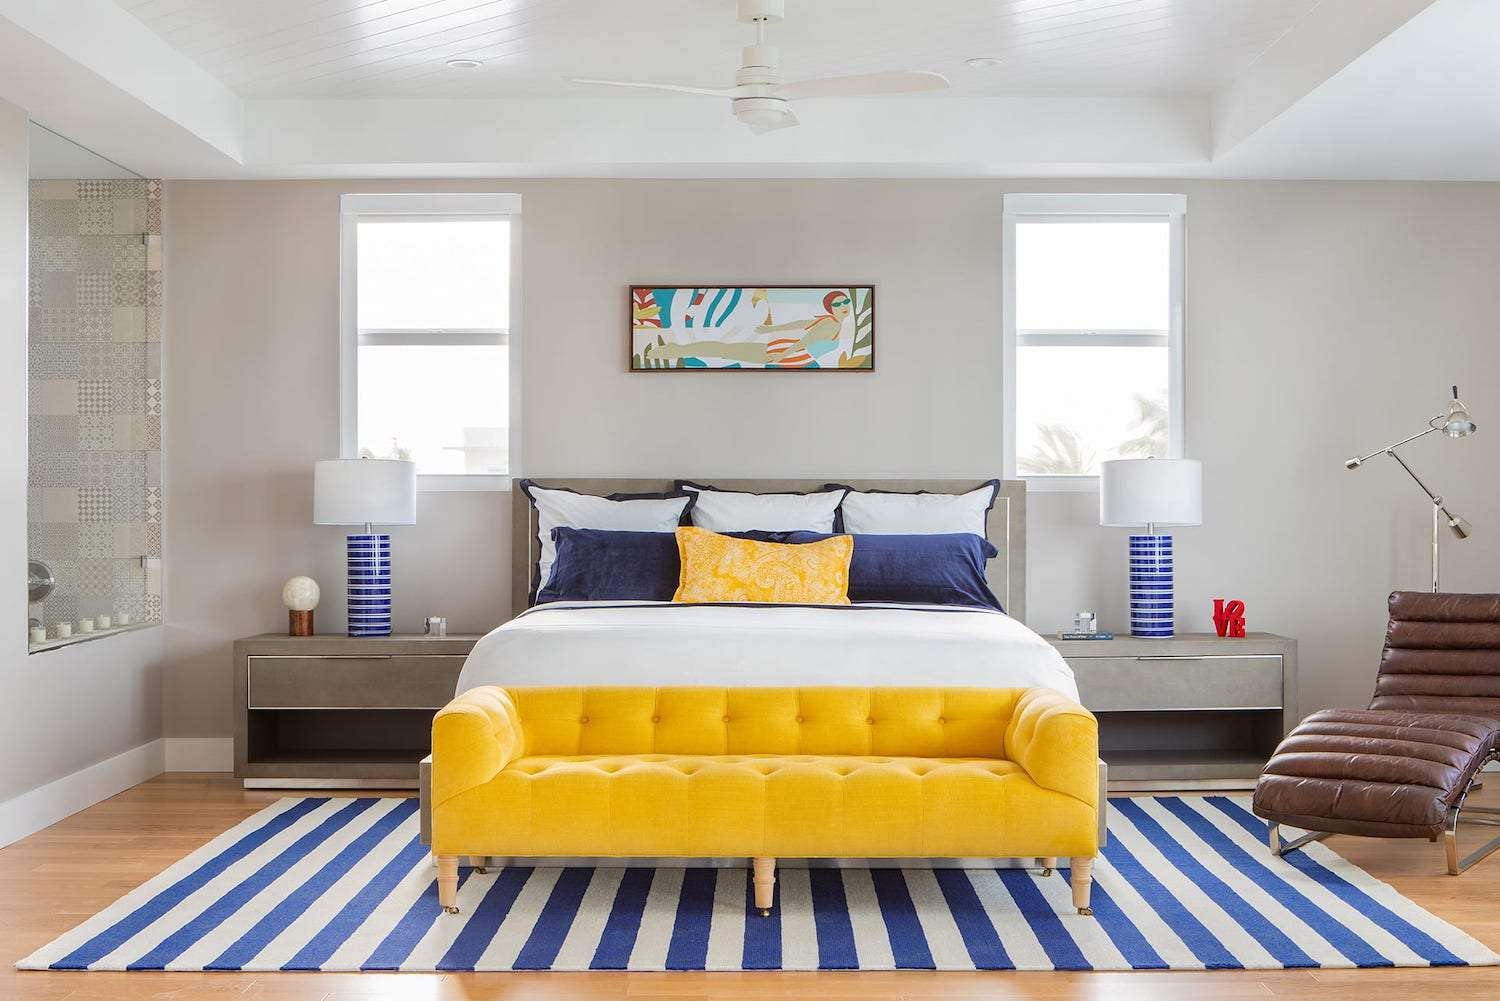 Mẫu 39: Một chiếc ghế bành màu vàng sẽ giúp tổng thể không gian phòng ngủ với tone xanh navy trở nên thu hút hơn.